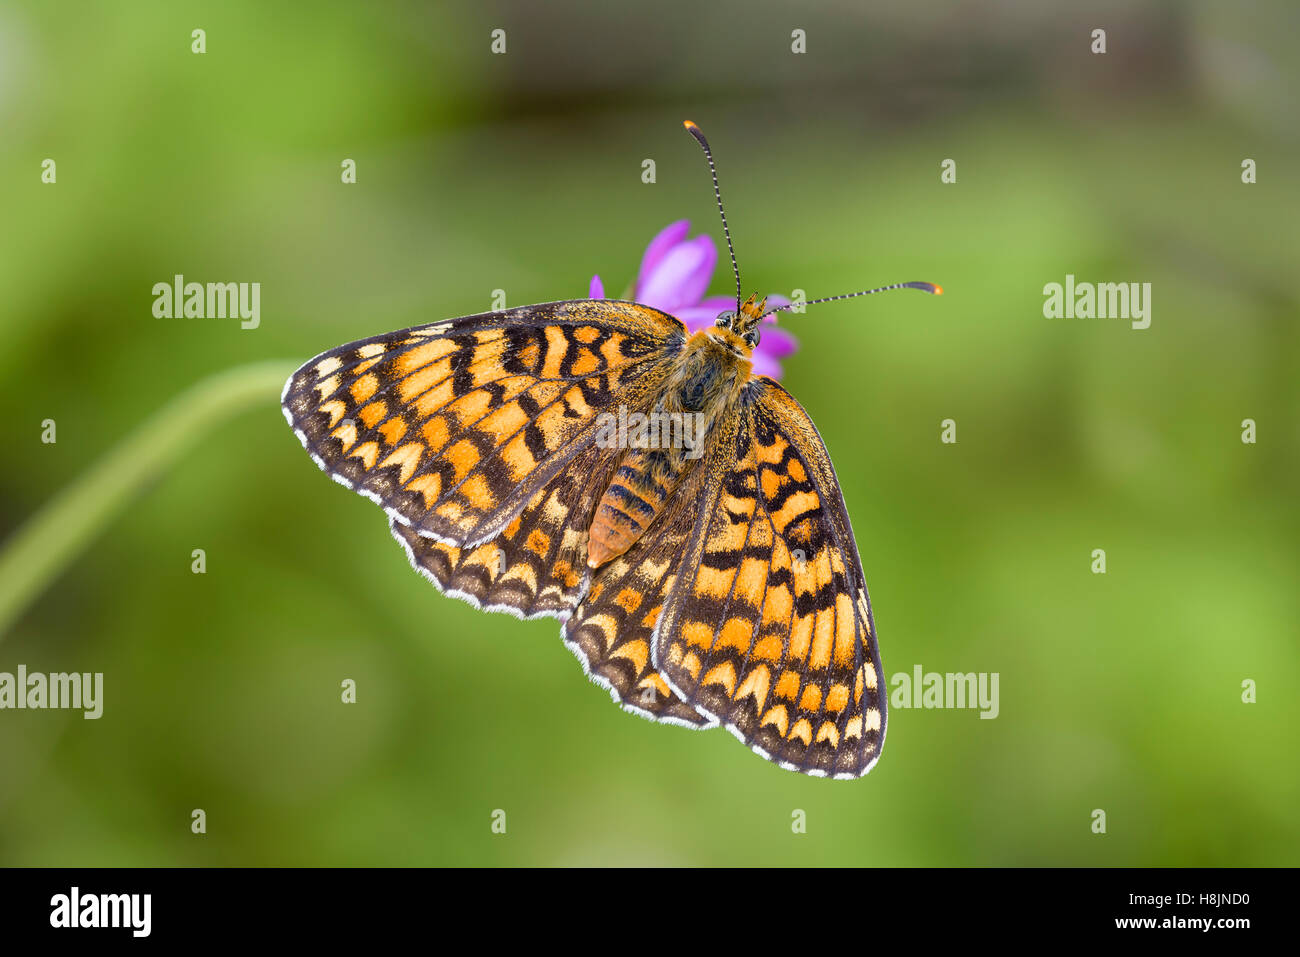 Flockenblumen-Scheckenfalter, Melitaea phoebe, Knapweed Fritillary Butterfly Stock Photo